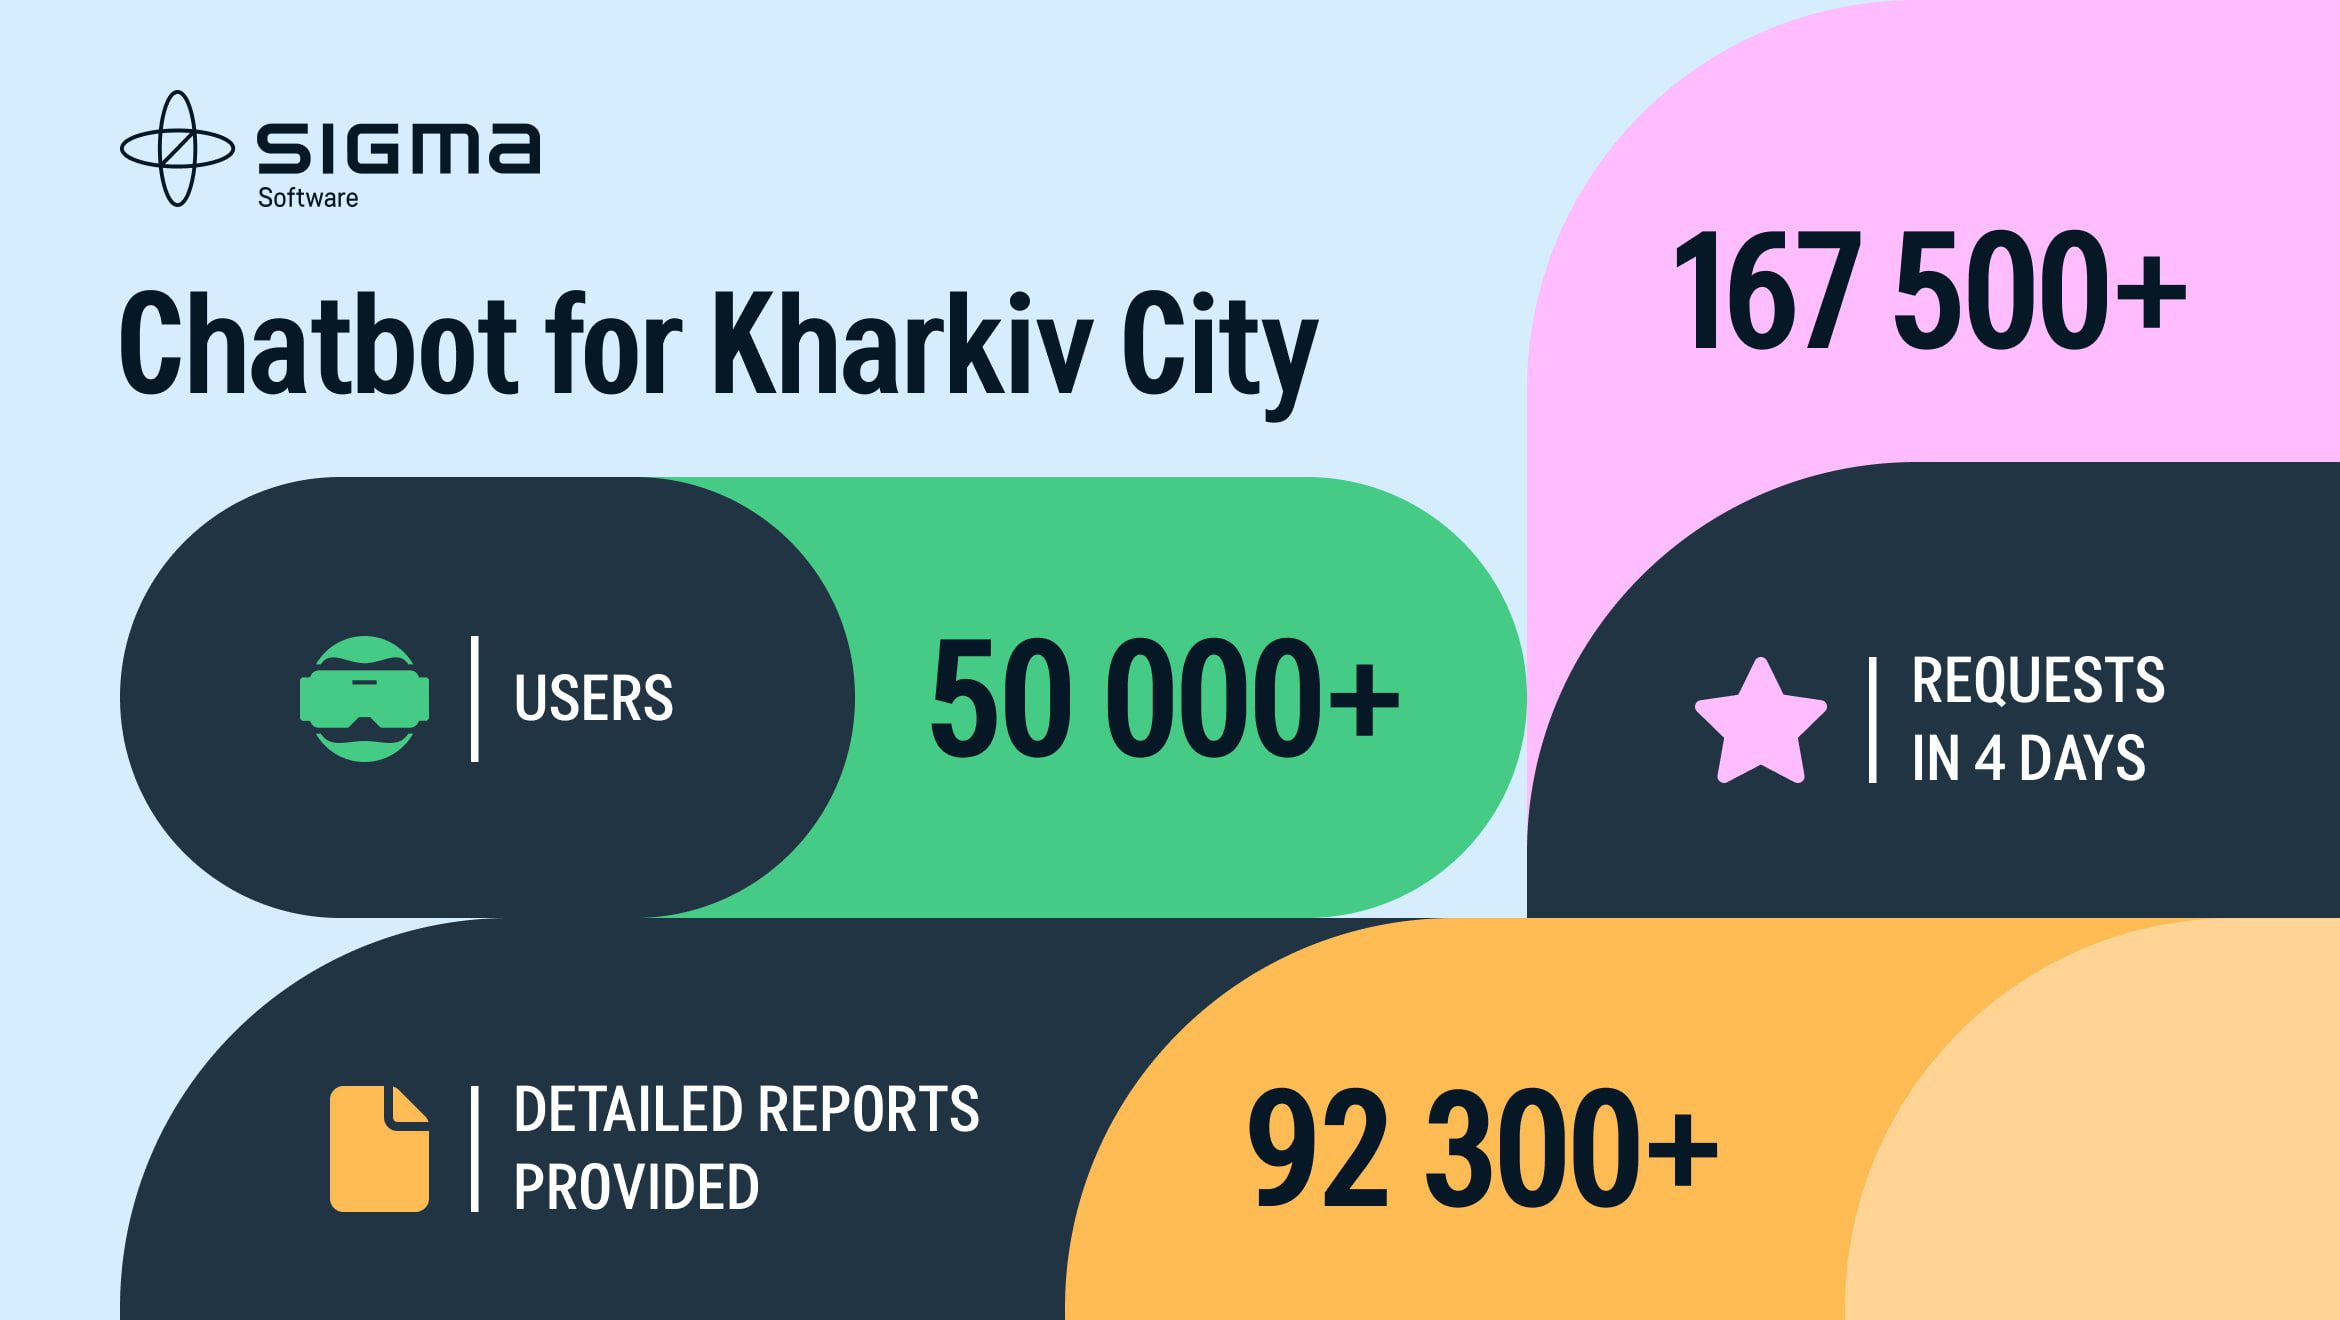 Usage of Chatbot for Kharkiv City